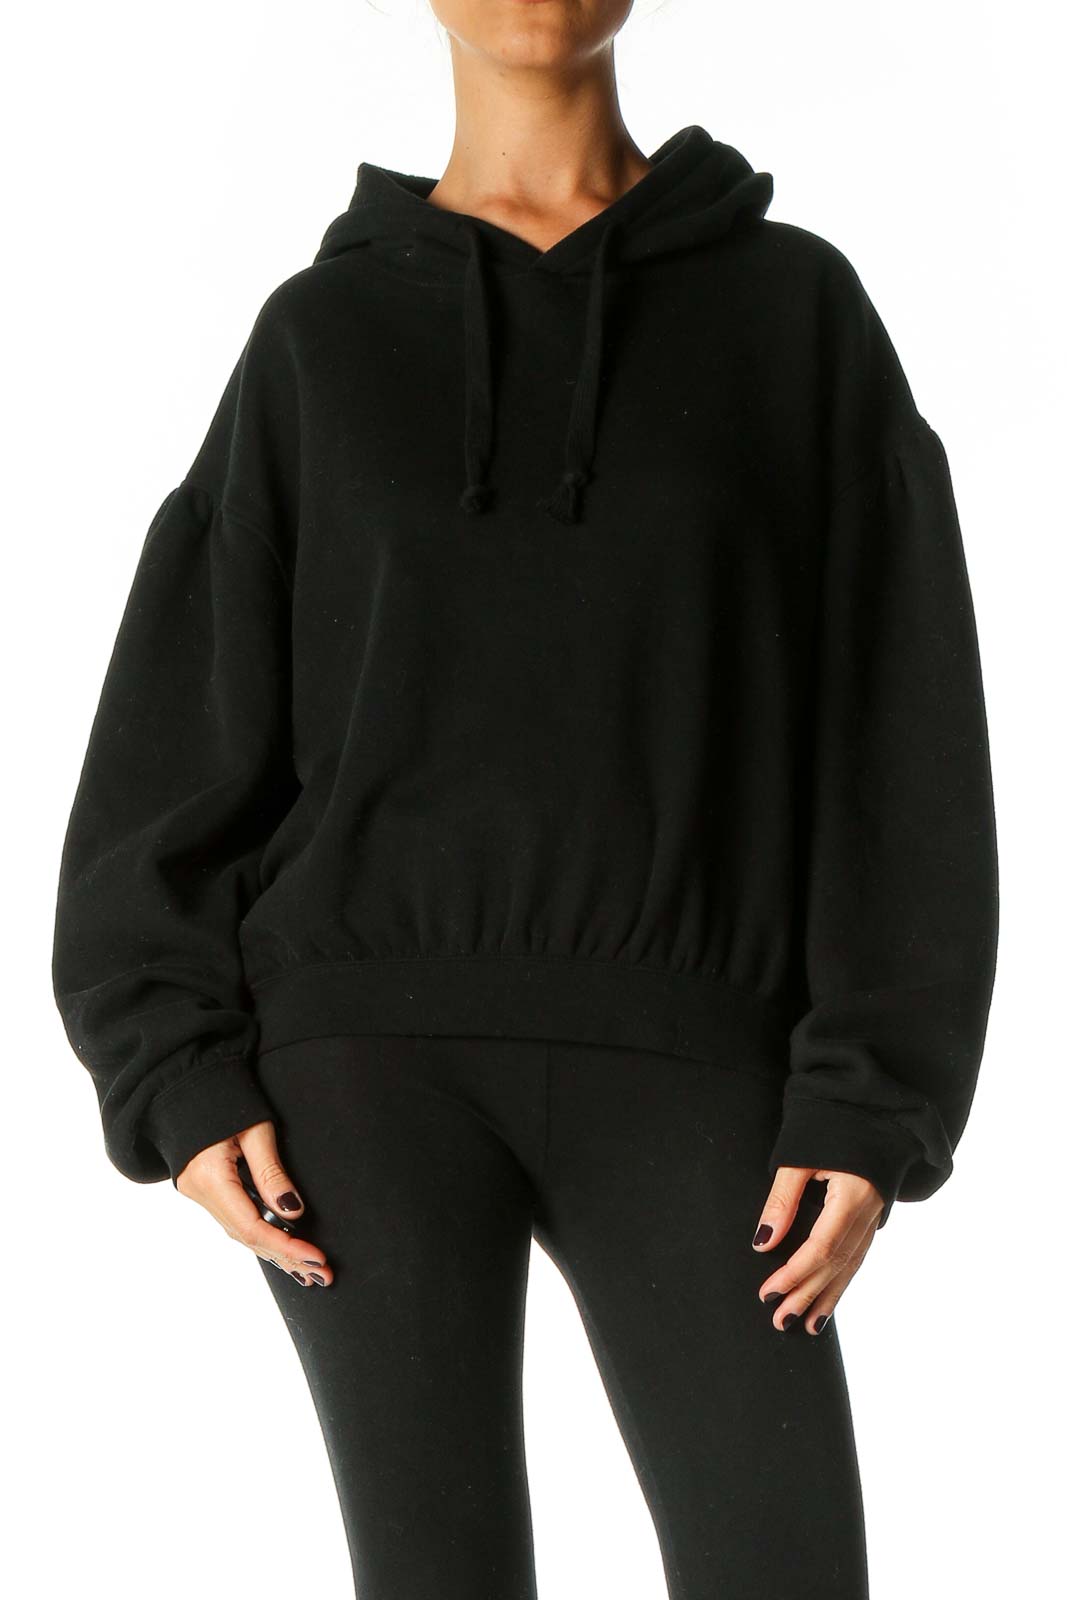 Black Solid Sweatshirt Front